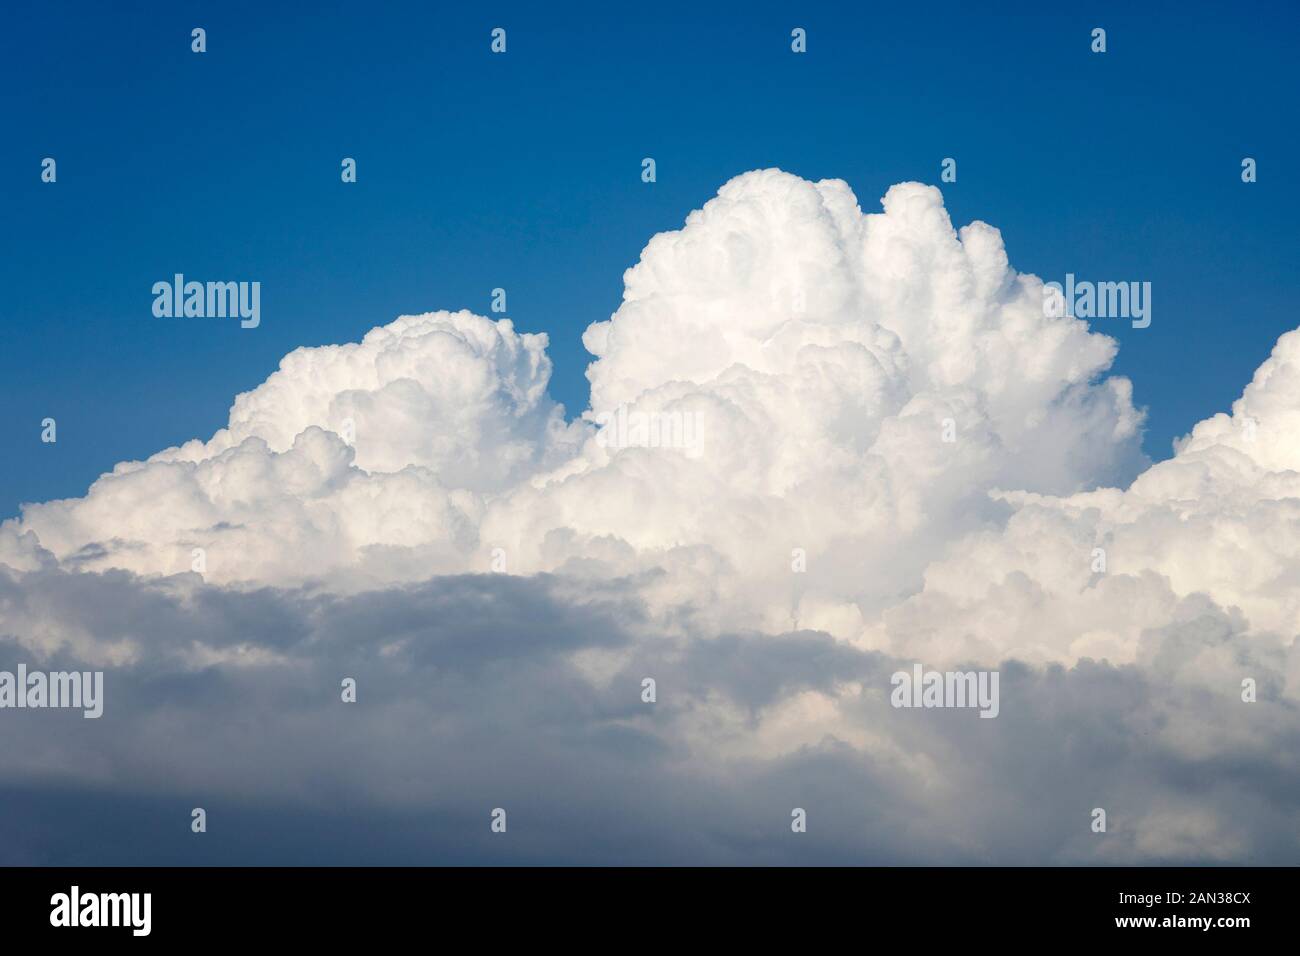 Cumulus-Wolkenbildung in der Region Galiläa, Israel Stockfoto